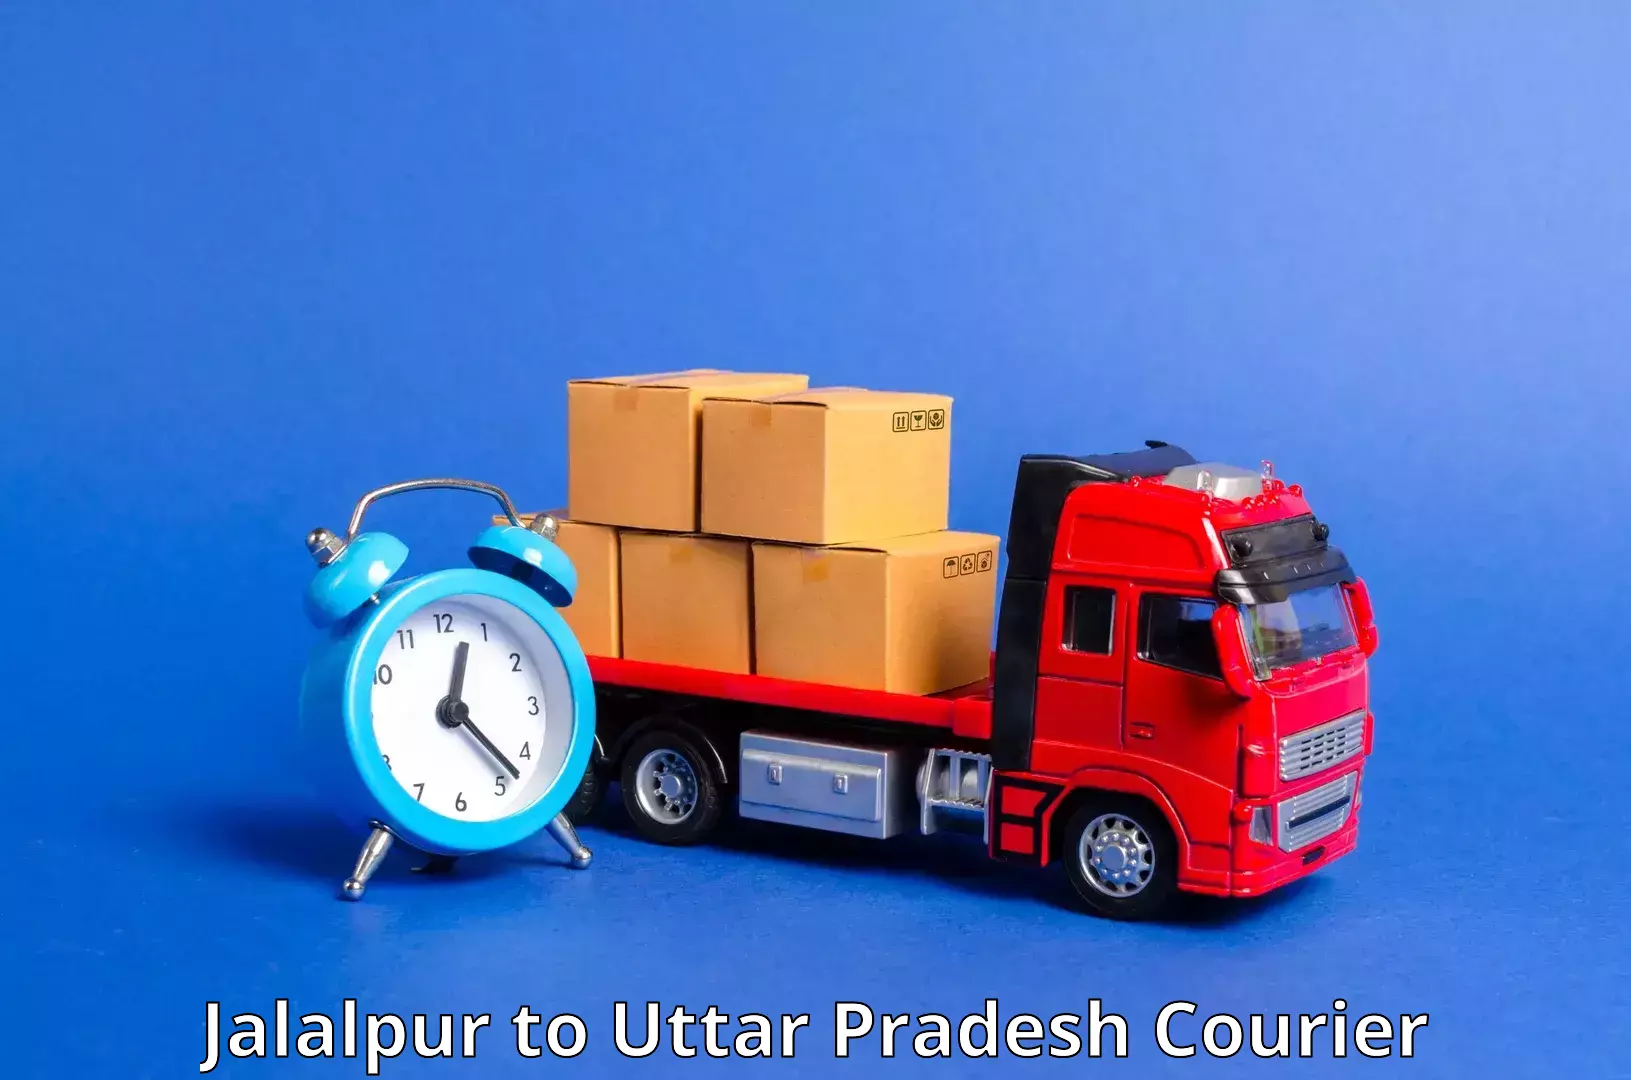 Doorstep delivery service Jalalpur to Ghaziabad